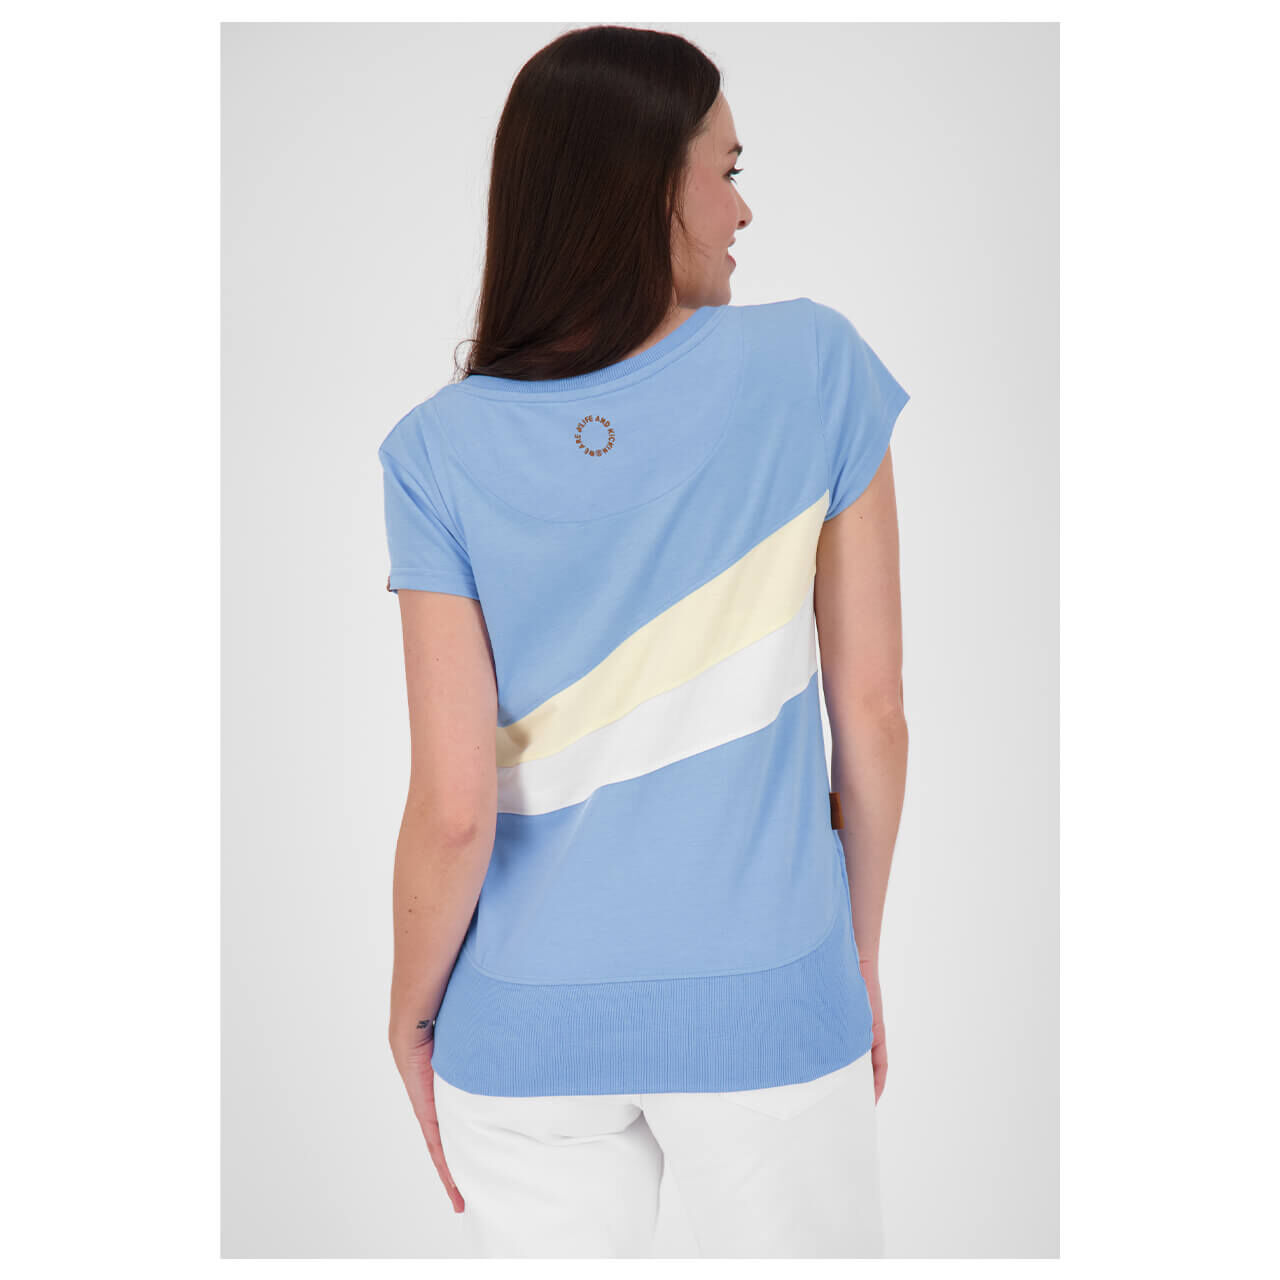 Alife and Kickin Clea T-Shirt für Damen in Hellblau gestreift, FarbNr.: 5200